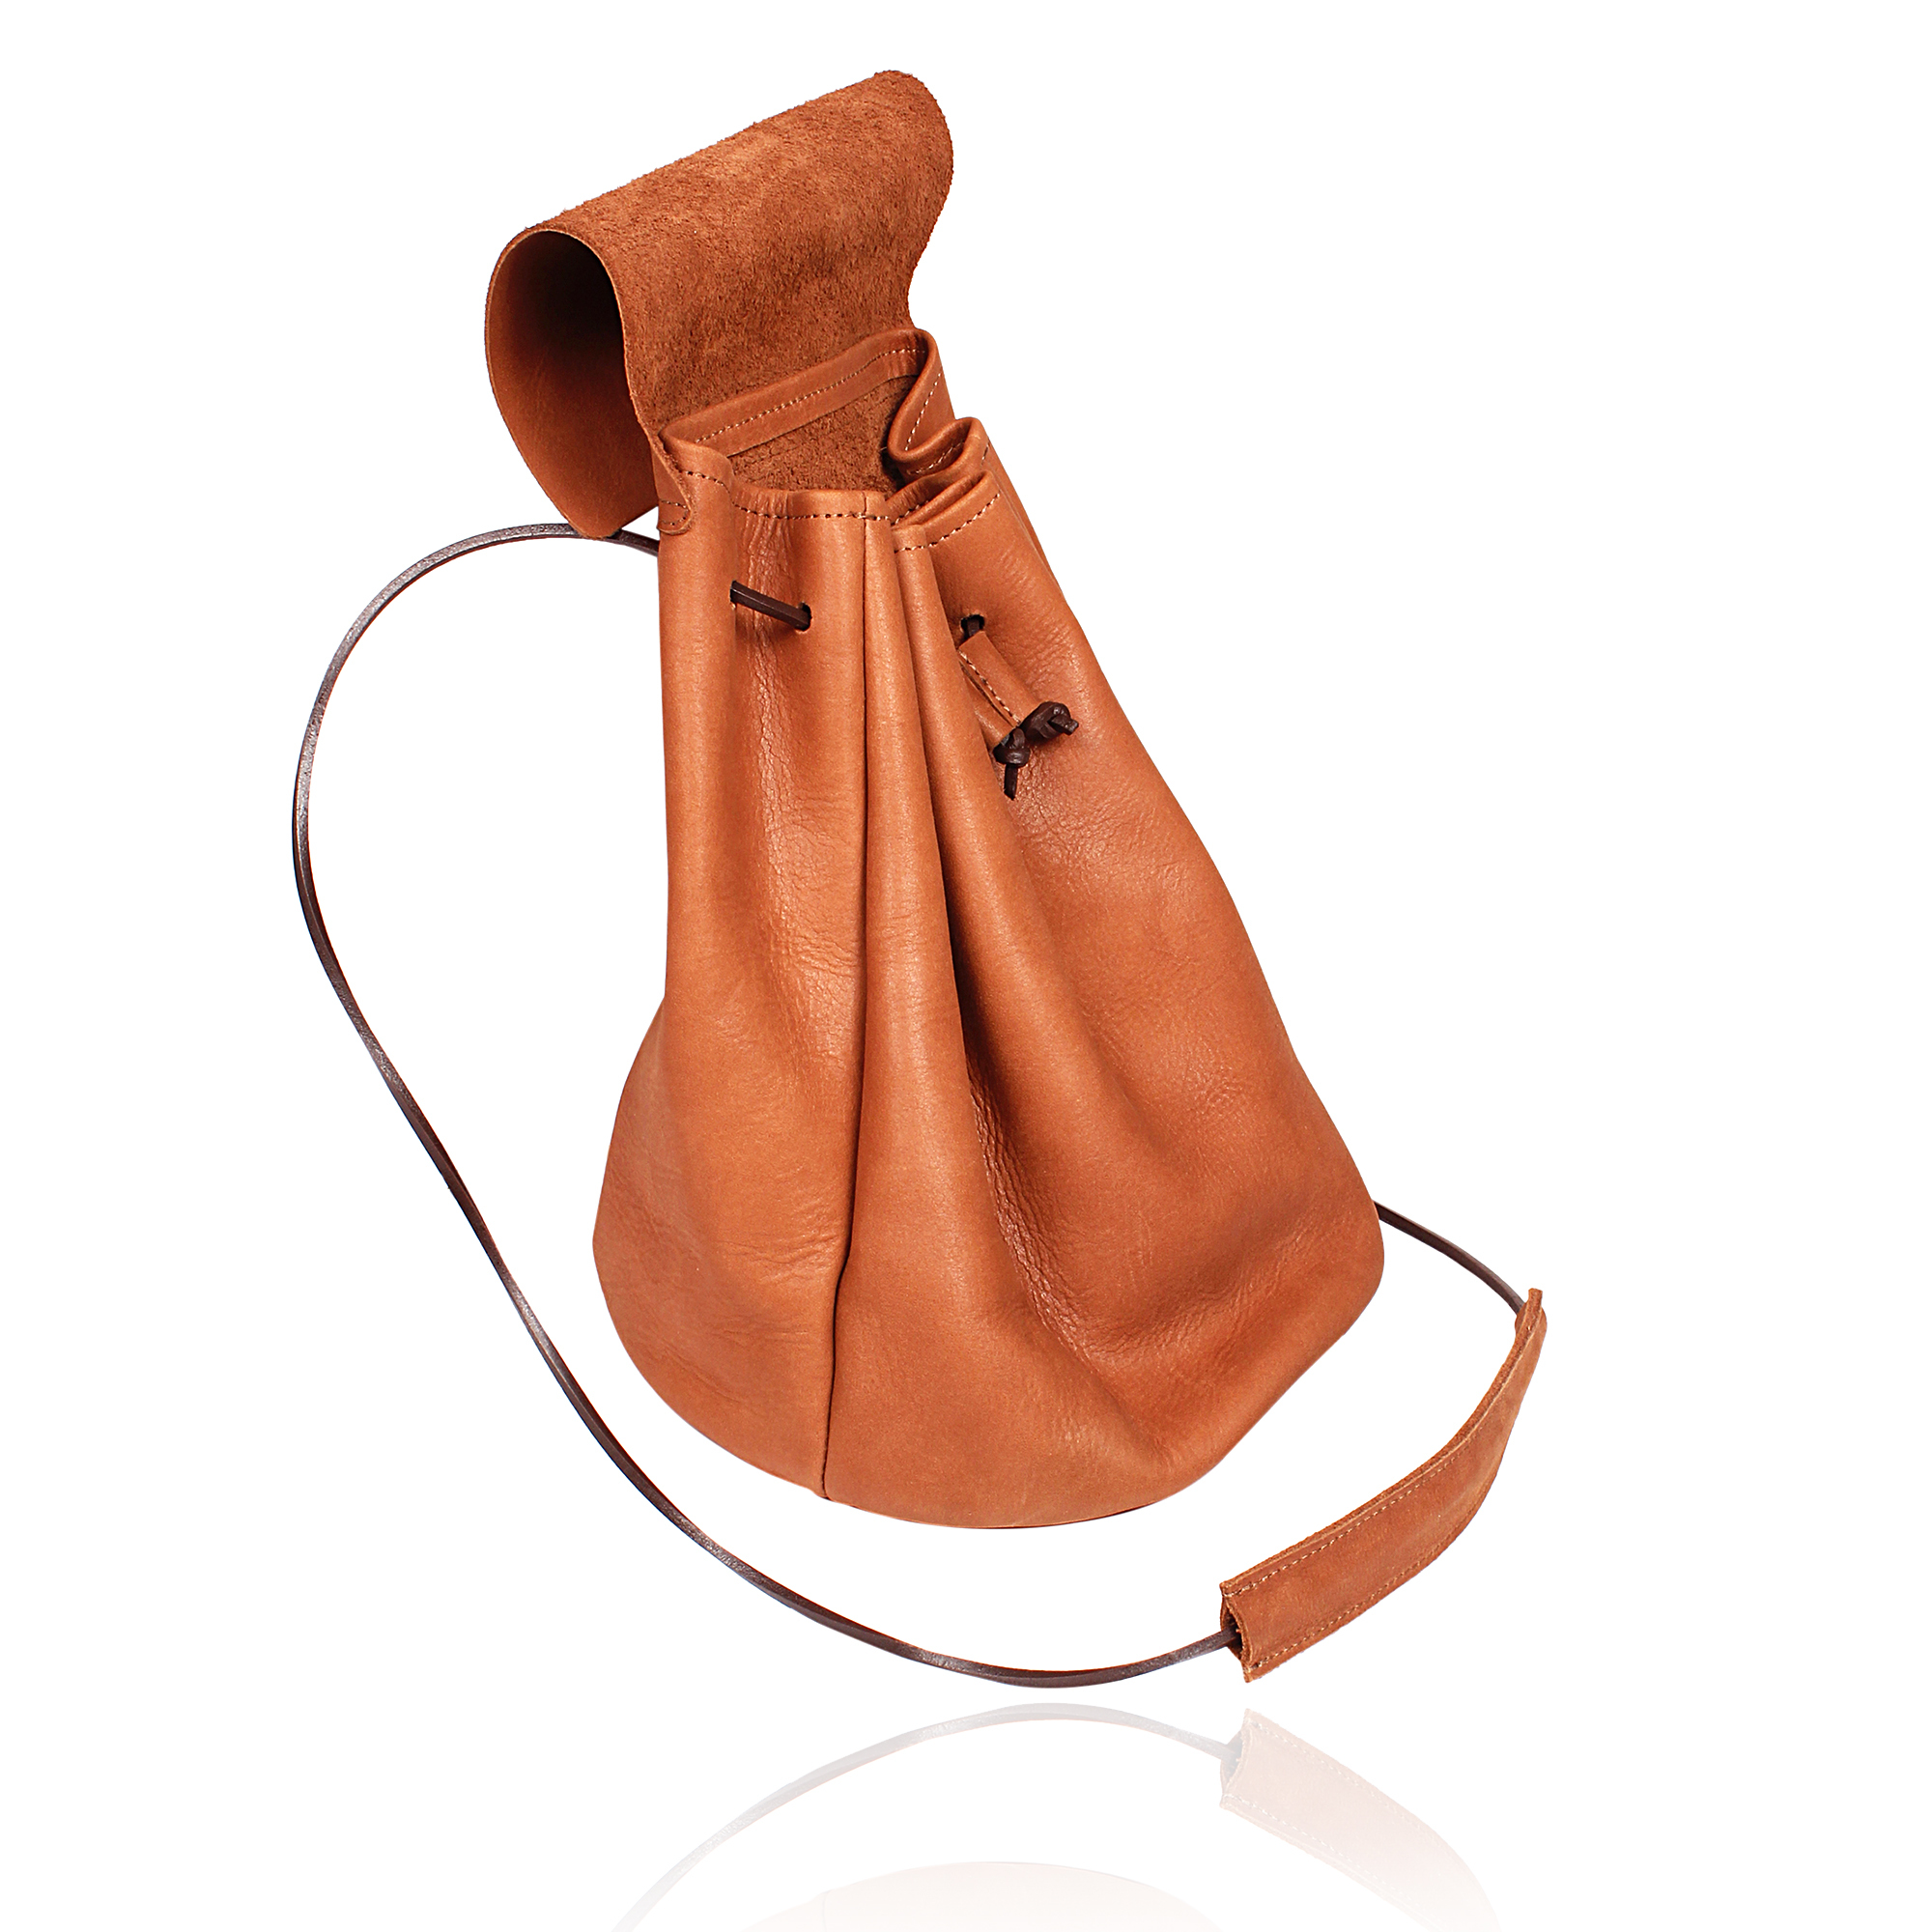 Potli Leather Bag